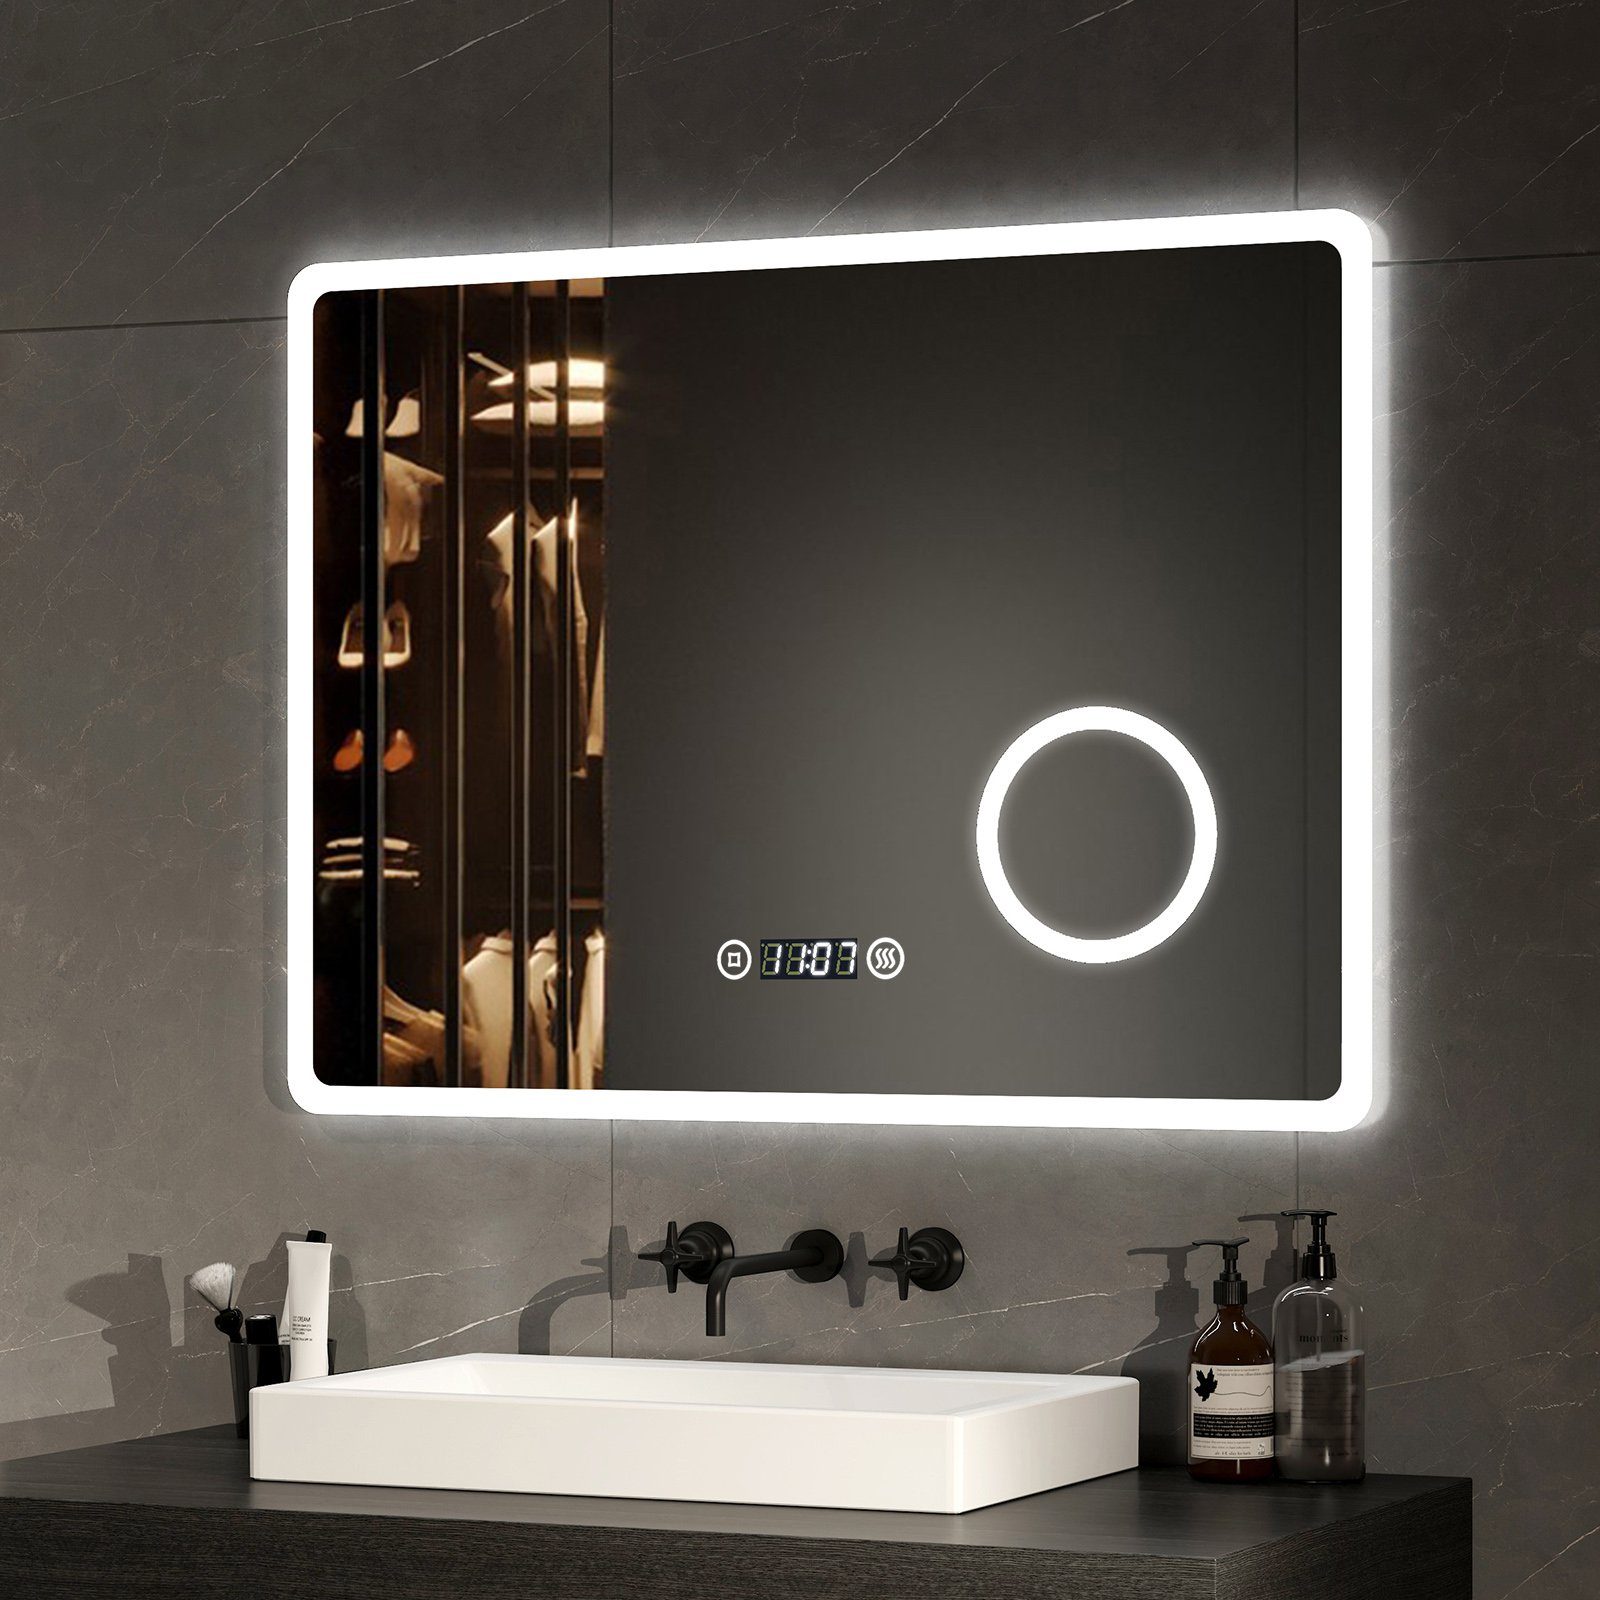 EMKE Badspiegel mit Beleuchtung LED Wandspiegel mit 3-fach Vergrößerung, Touchschalter, Beschlagfrei, Uhr, 3 Lichtfarben, Dimmbar (Modell M)